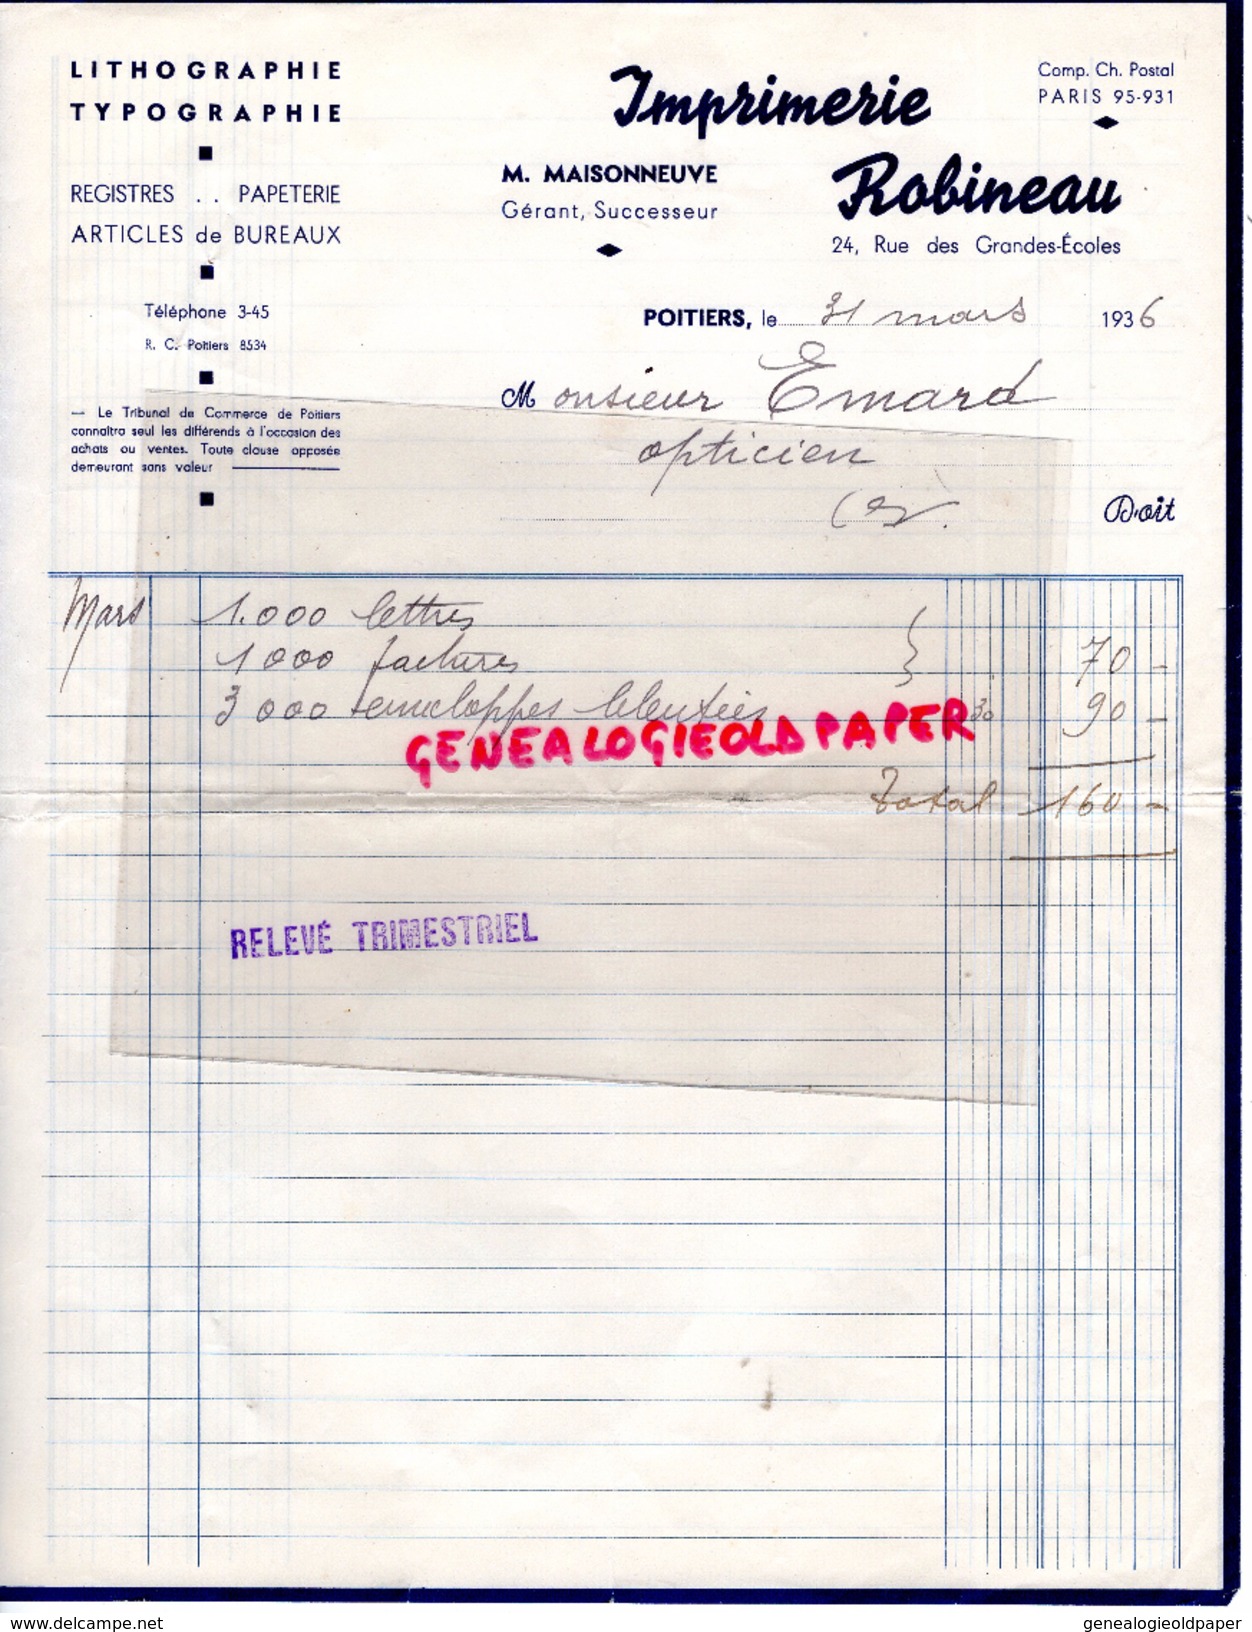 86 - POITIERS - FACTURE IMPRIMERIE ROBINEAU- M. MAISONNEUVE- 24 RUE GRANDES ECOLES- LITHOGRAPHIE TYPOGRAPHIE-1936 - Printing & Stationeries